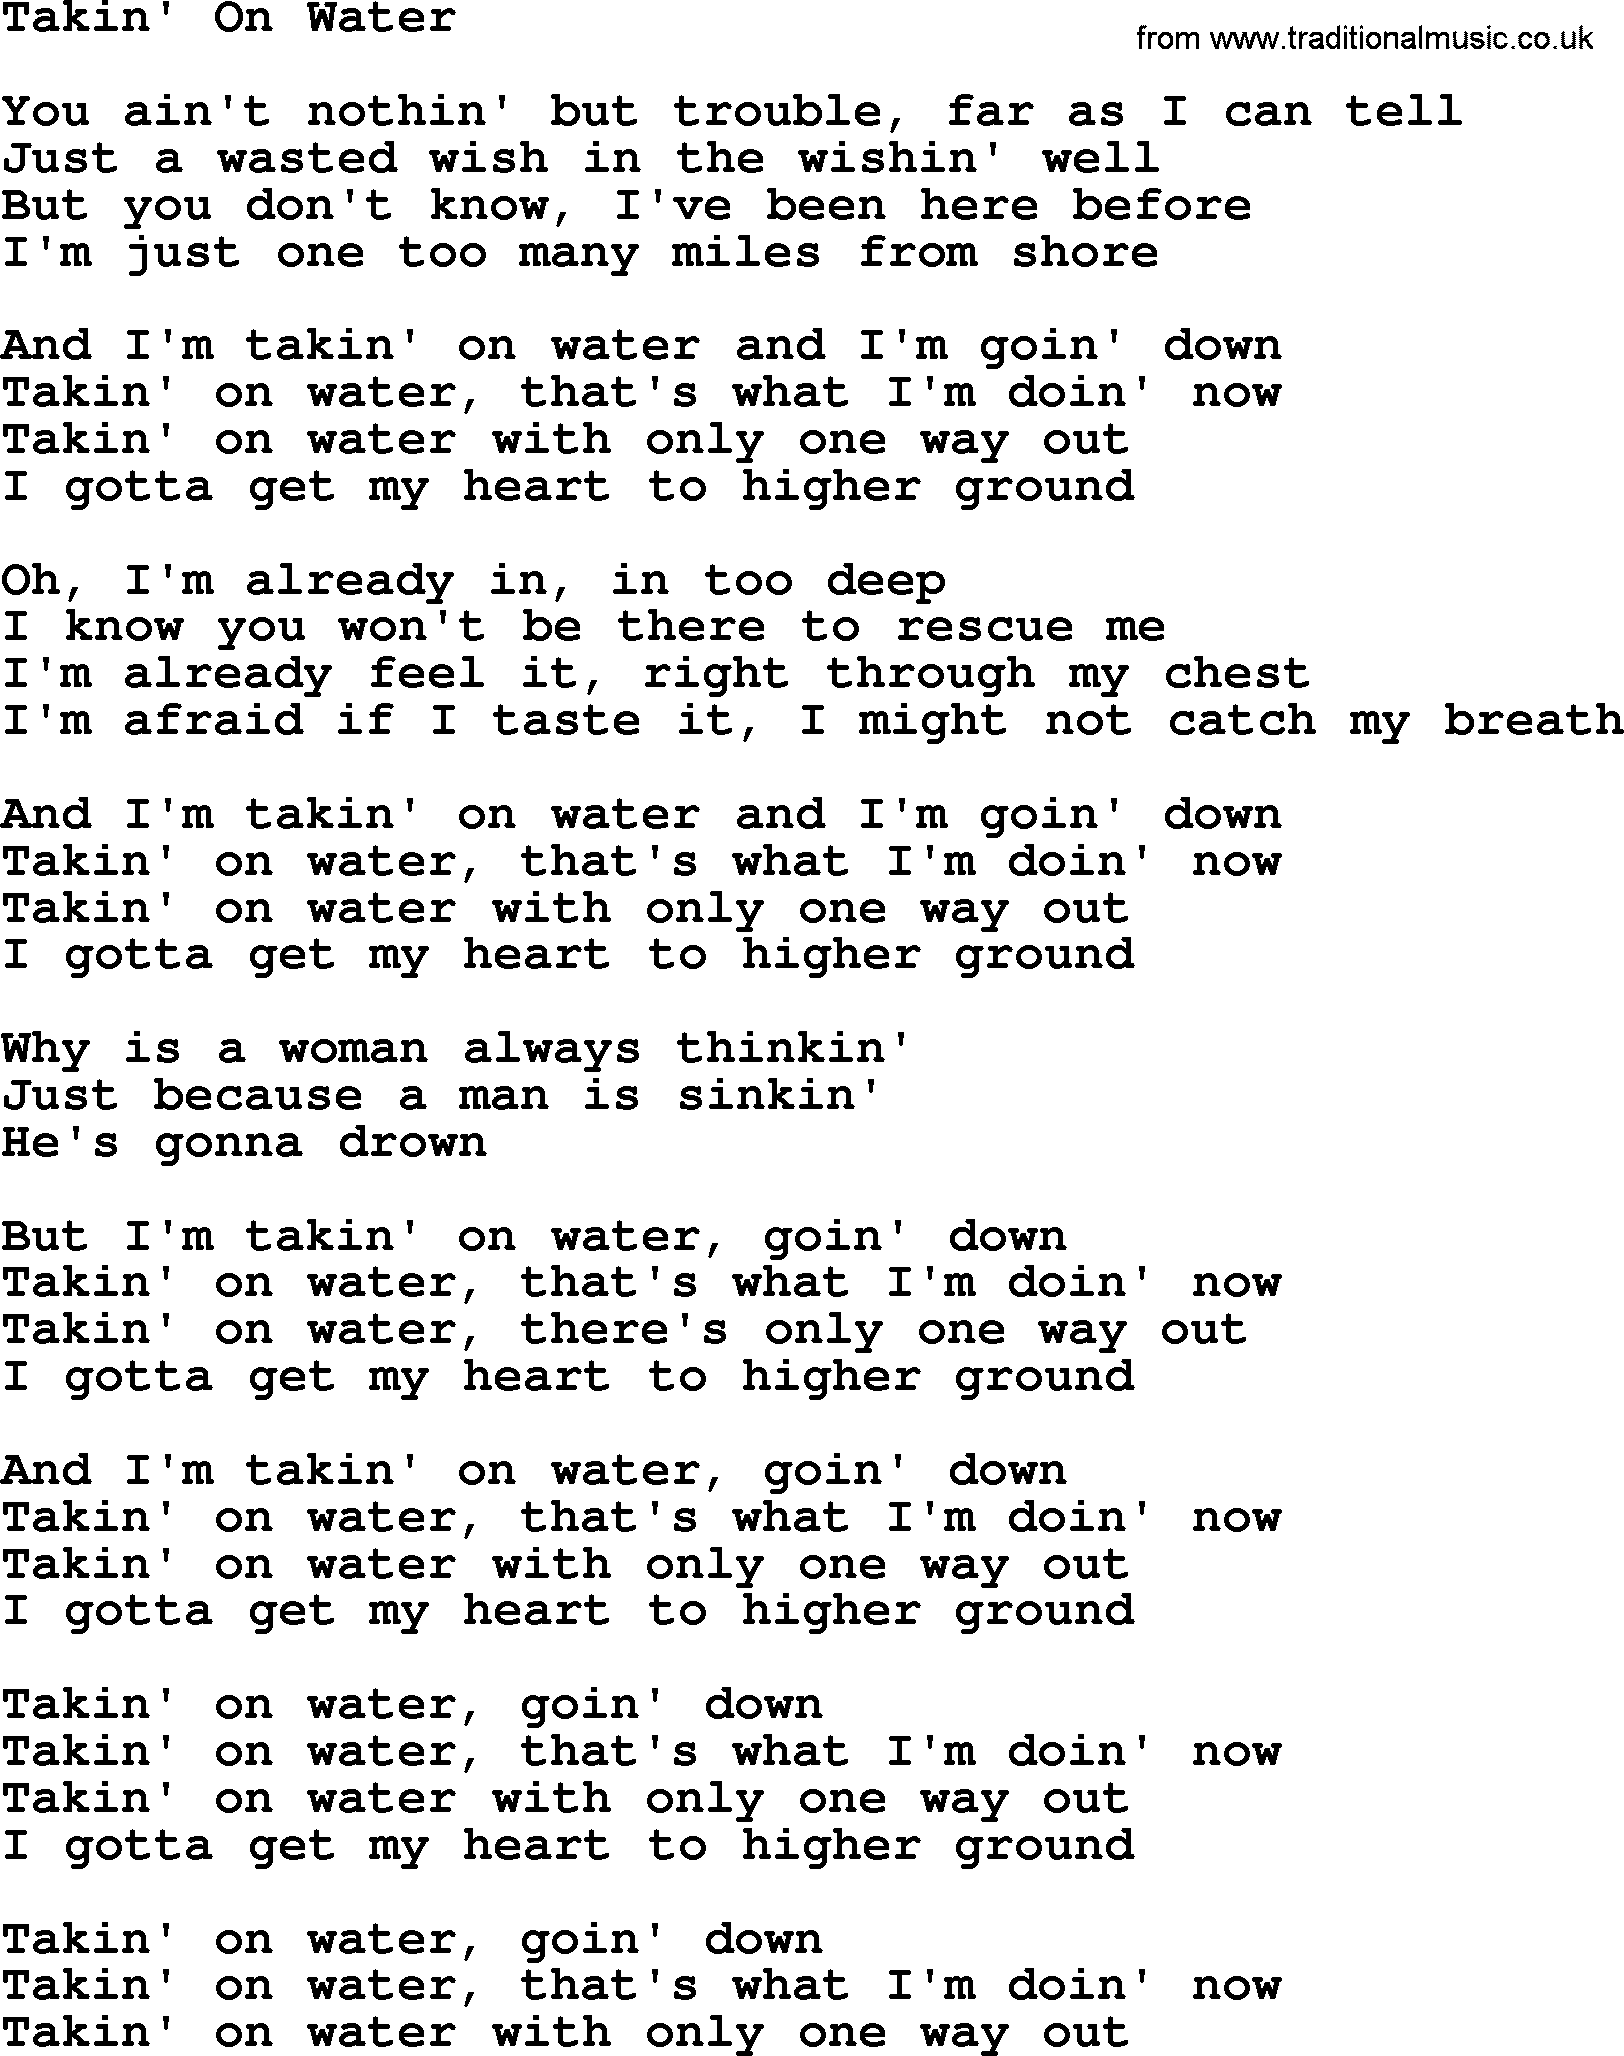 Willie Nelson song: Takin' On Water lyrics